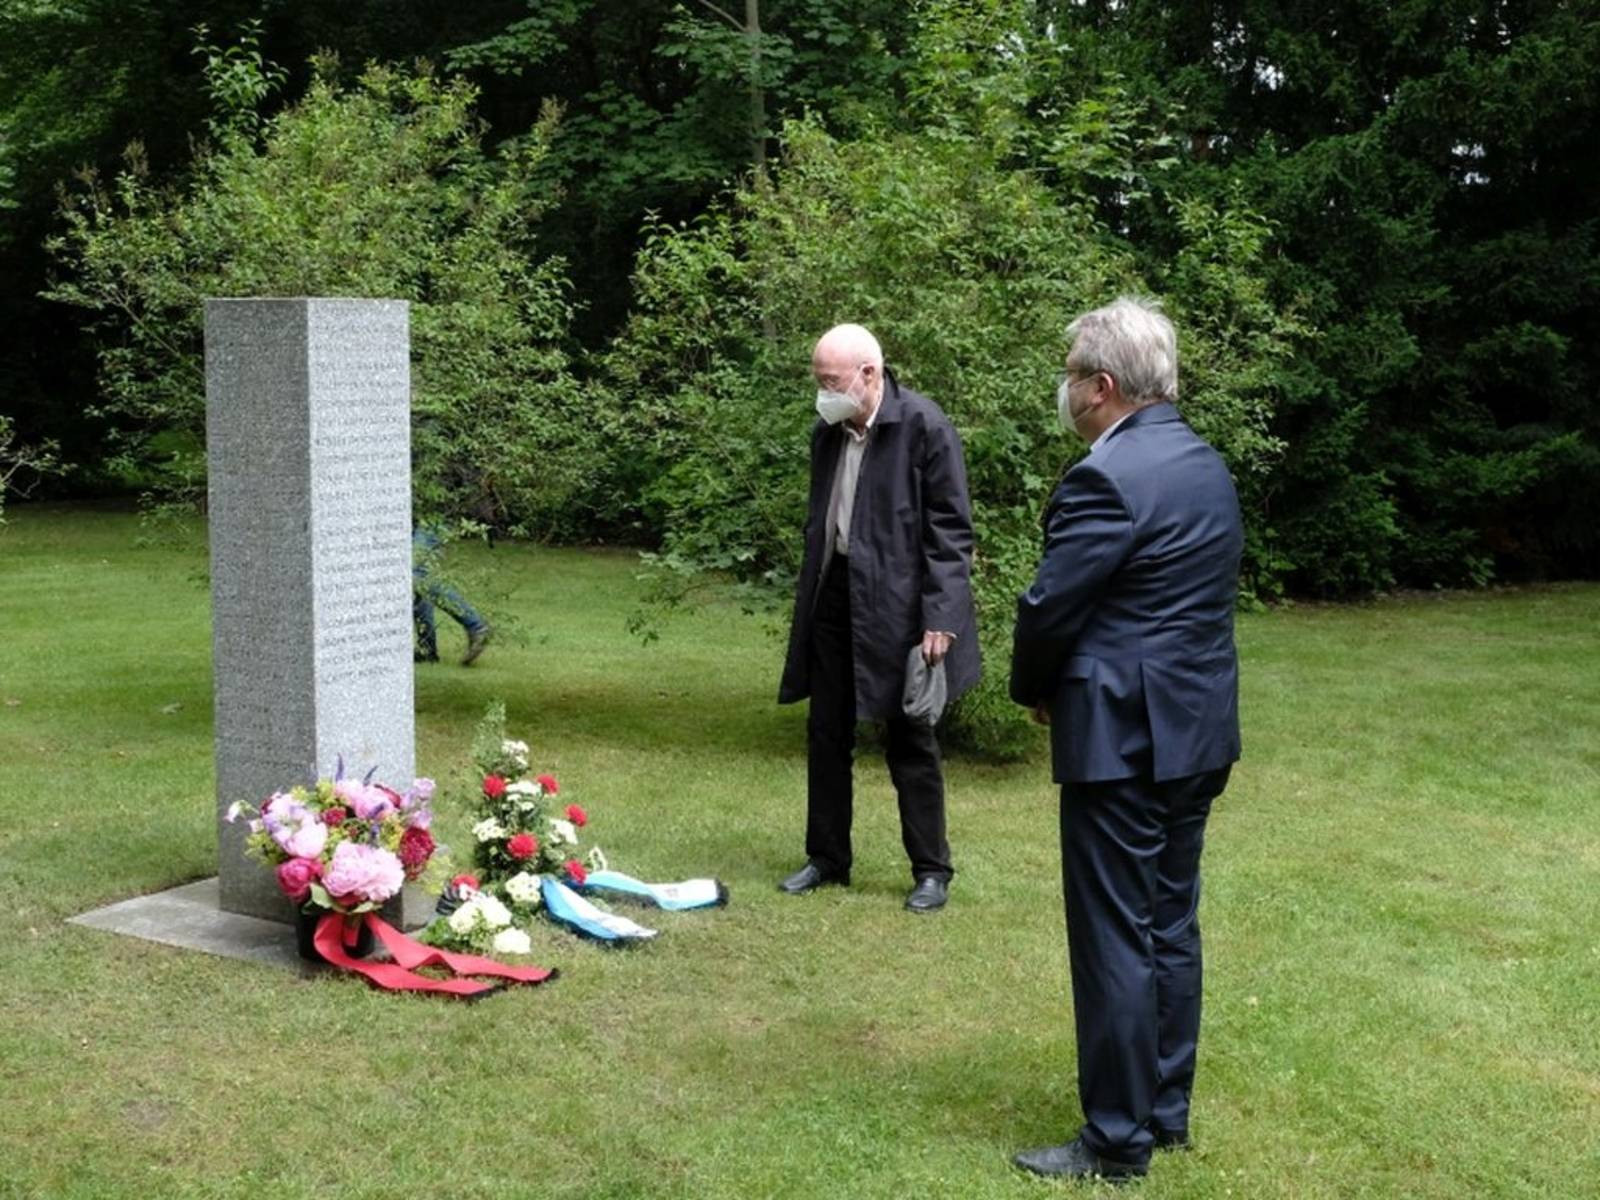 Bürgermeister Thomas Hermann und Reinhold Weismann-Kieser, VVN/BdA, gedenken an der Stele für die am 6. April 1945 erschossenen Zwangsarbeiter*innen auf dem Friedhof Sellhorst den Opfern des deutschen Überfalls auf die Sowjetunion